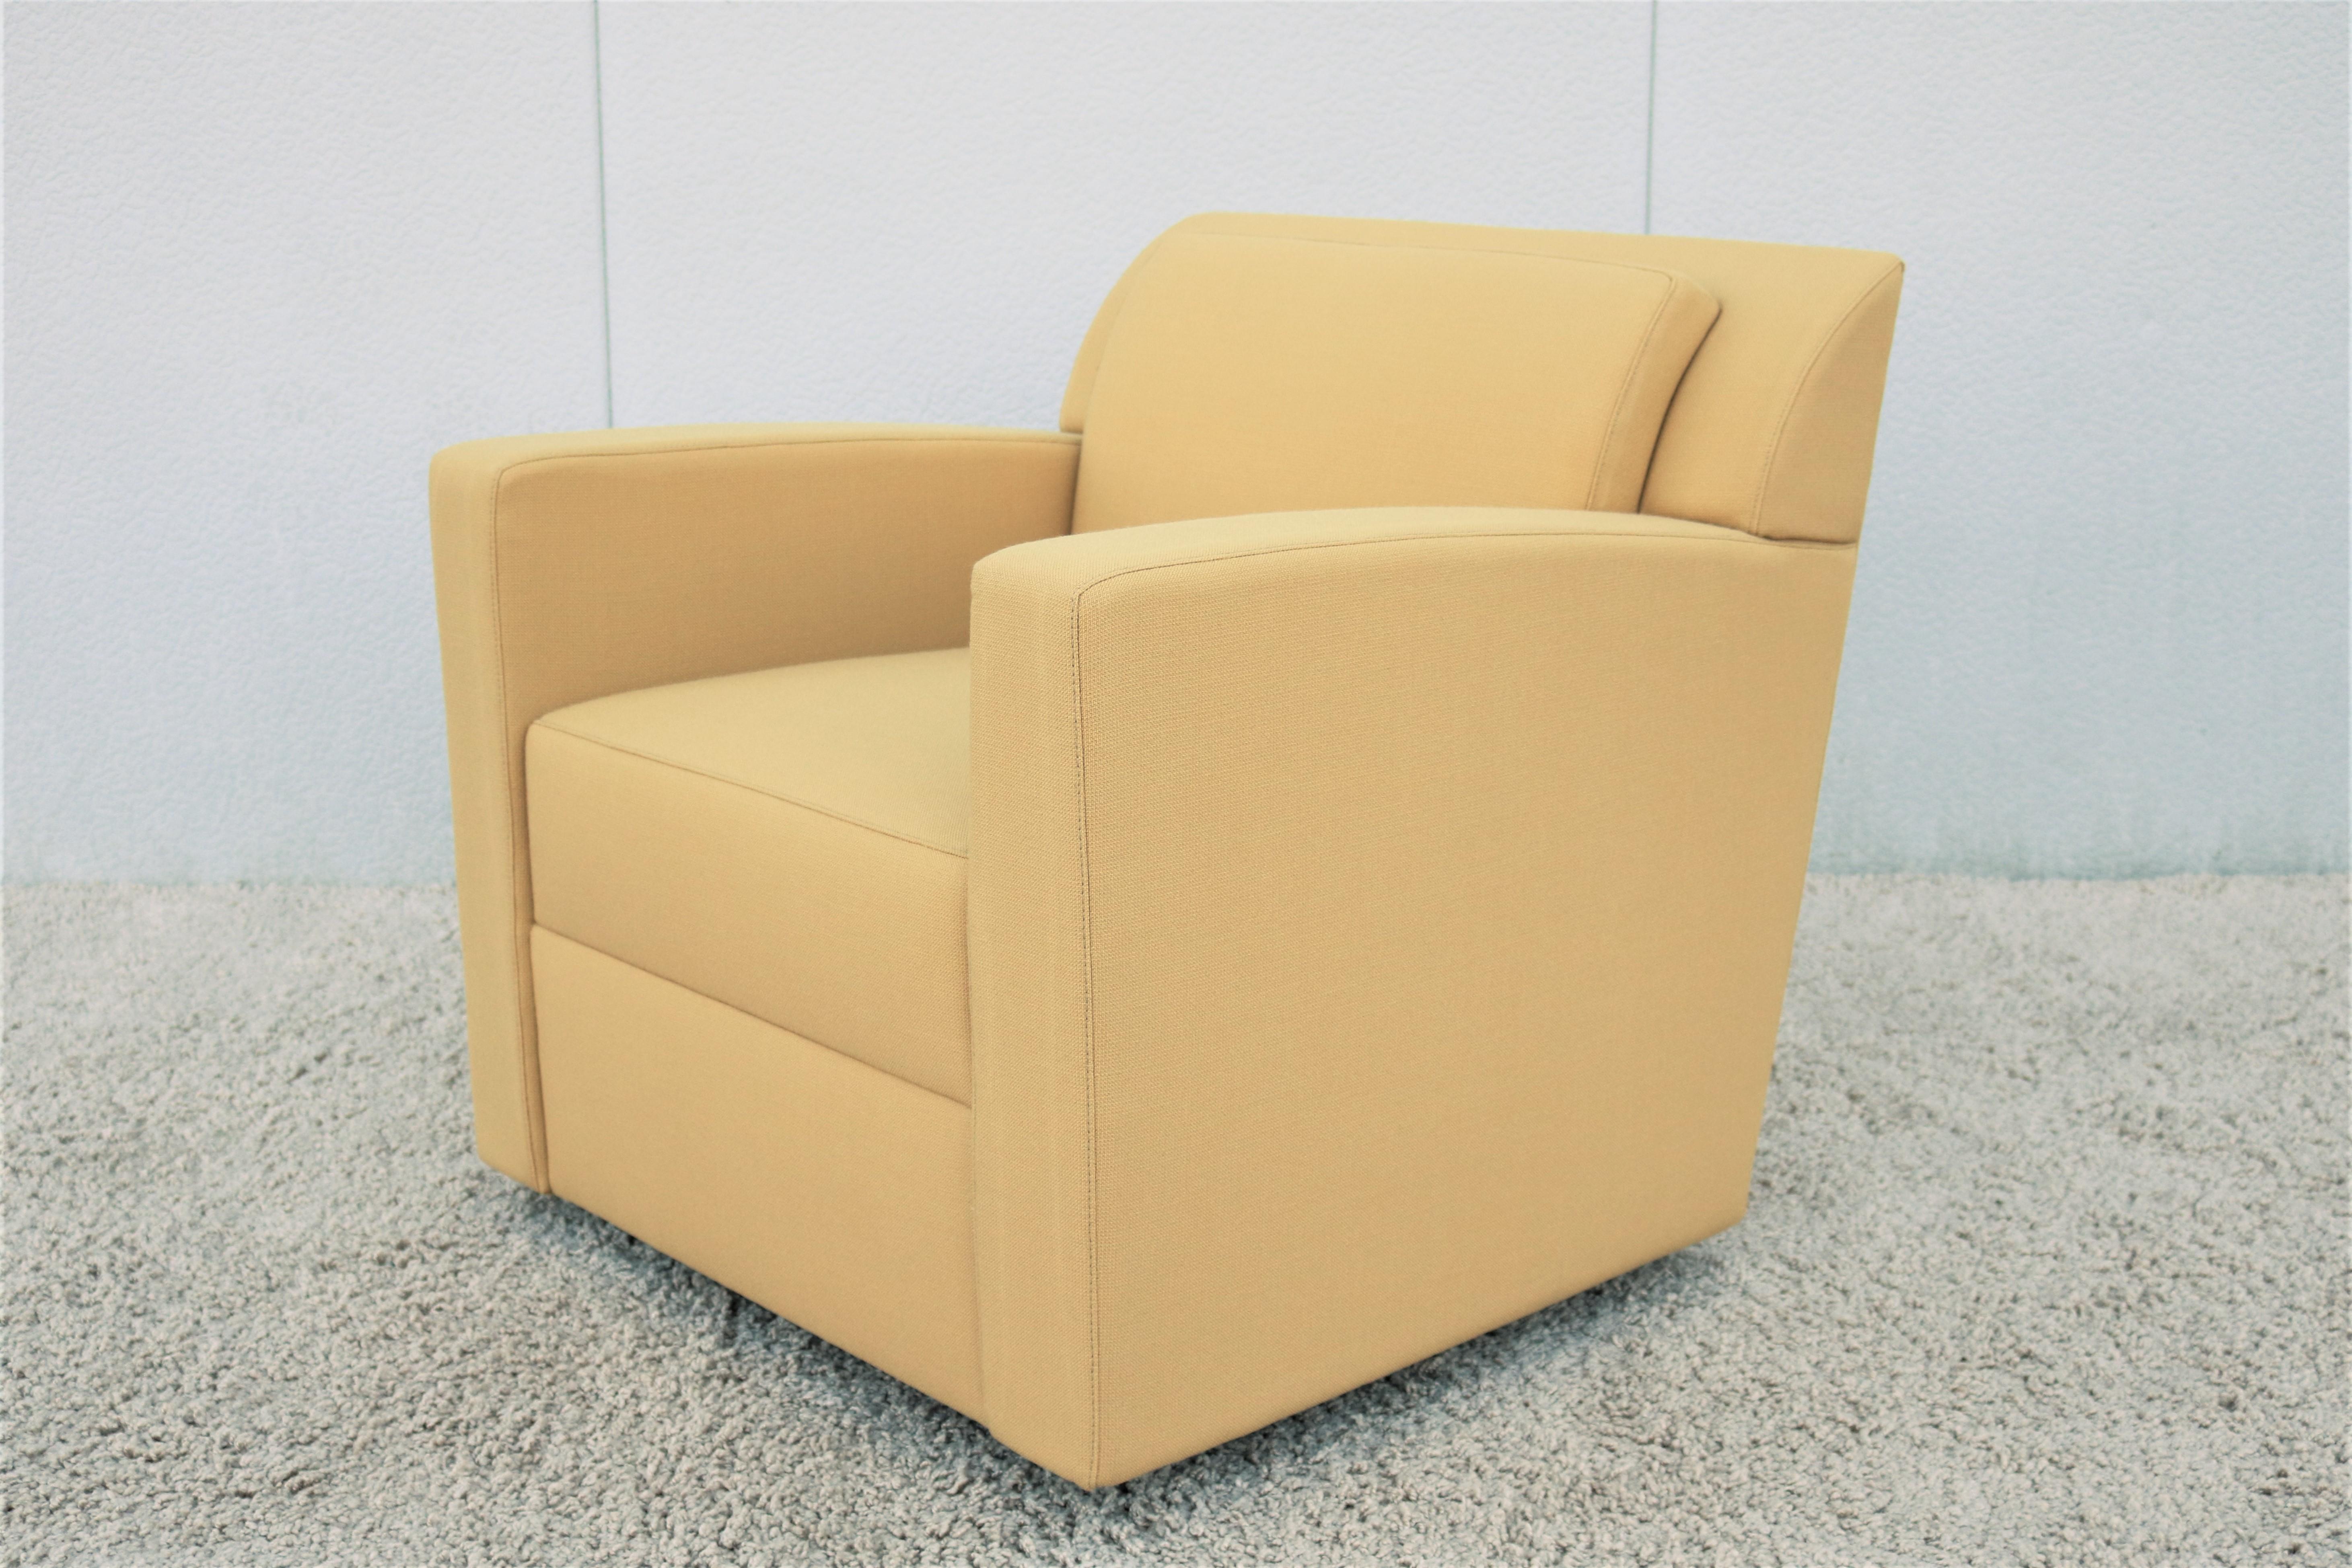 Fabelhafter zeitgenössischer moderner brandneuer Entrada Lounge Chair / Clubsessel. Der von Brian Cox für Bernhardt Design entworfene Sessel bietet entspannten Komfort und außergewöhnliche Unterstützung. Hervorragend geeignet für private und